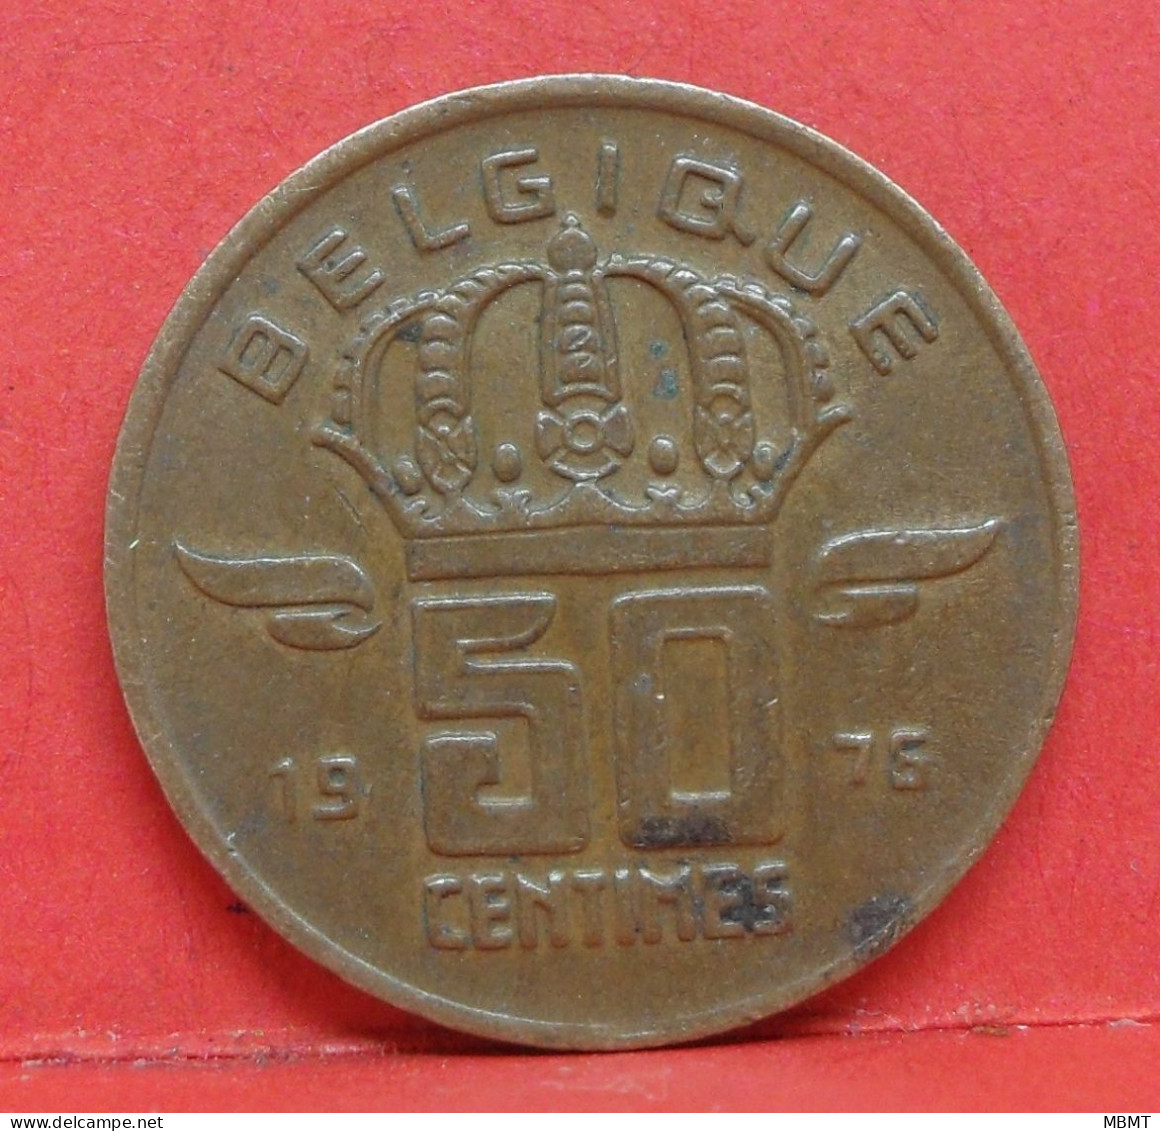 50 Centimes 1976 - TTB - Pièce Monnaie Belgique - Article N°1721 - 50 Cent